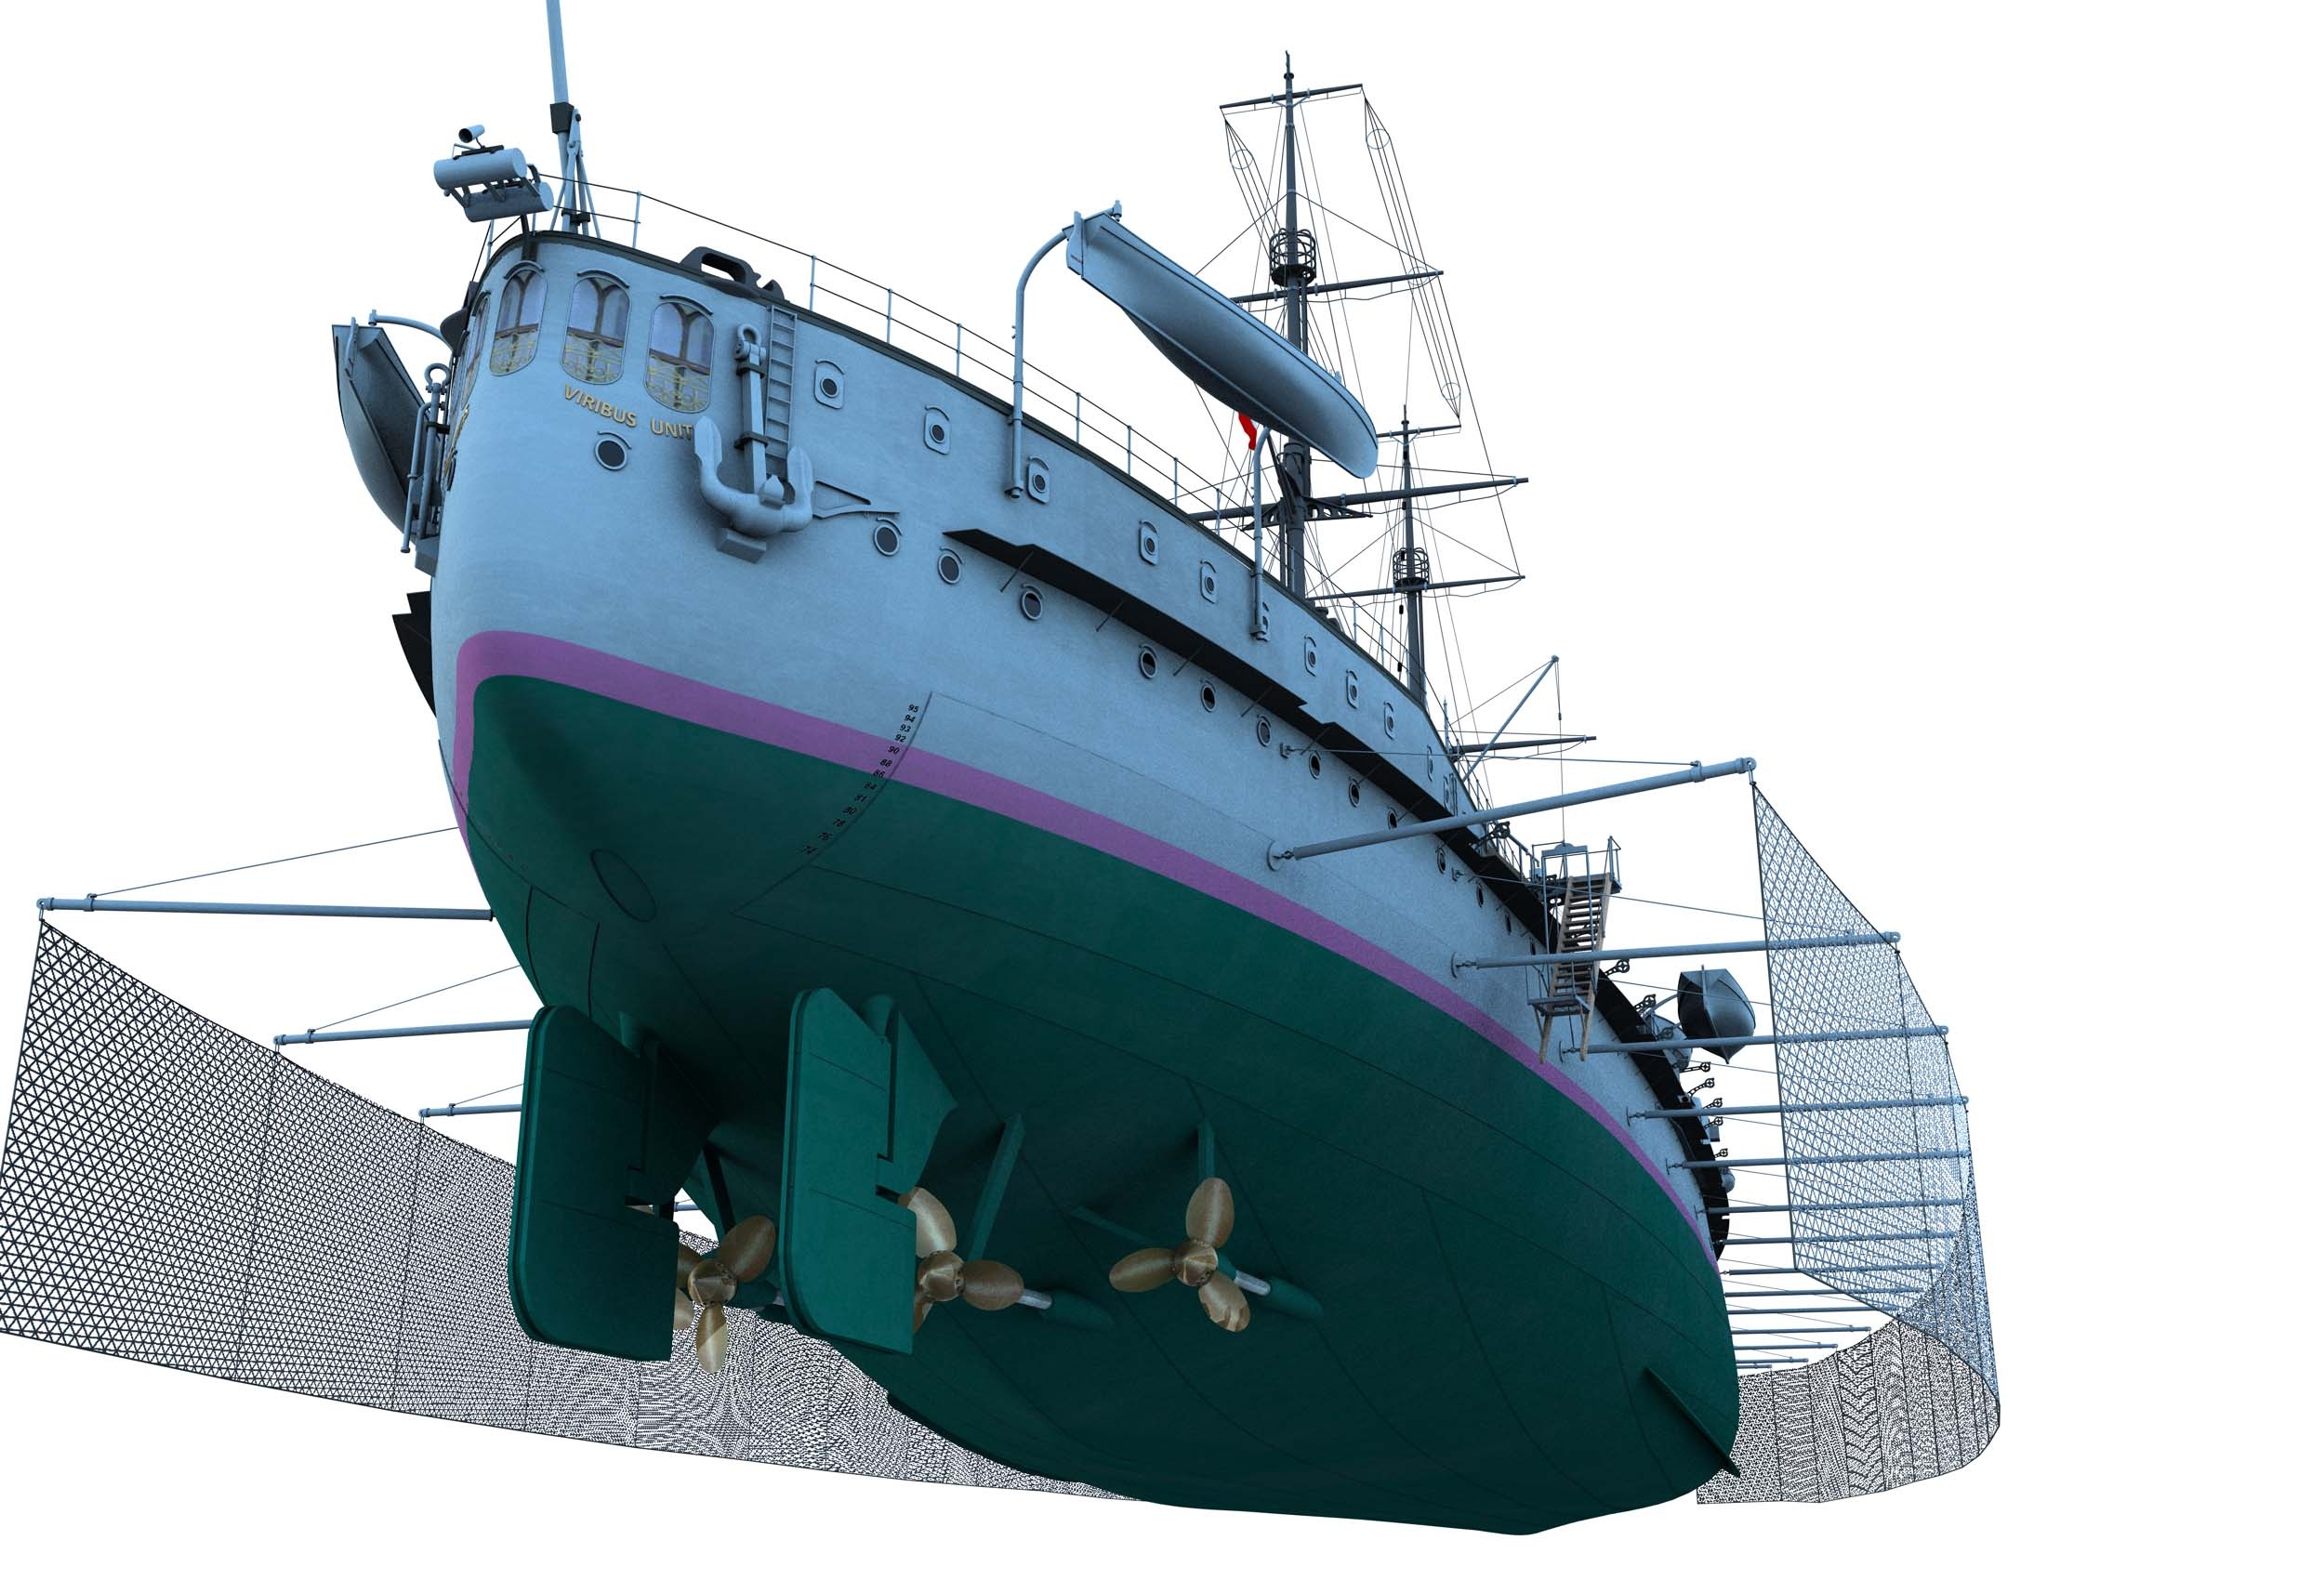 https://0901.nccdn.net/4_2/000/000/001/abd/CK123-Partial-Ship-Stern-Rudders-with-Torpedo-Nets-Swung-out-2500x1700.jpg